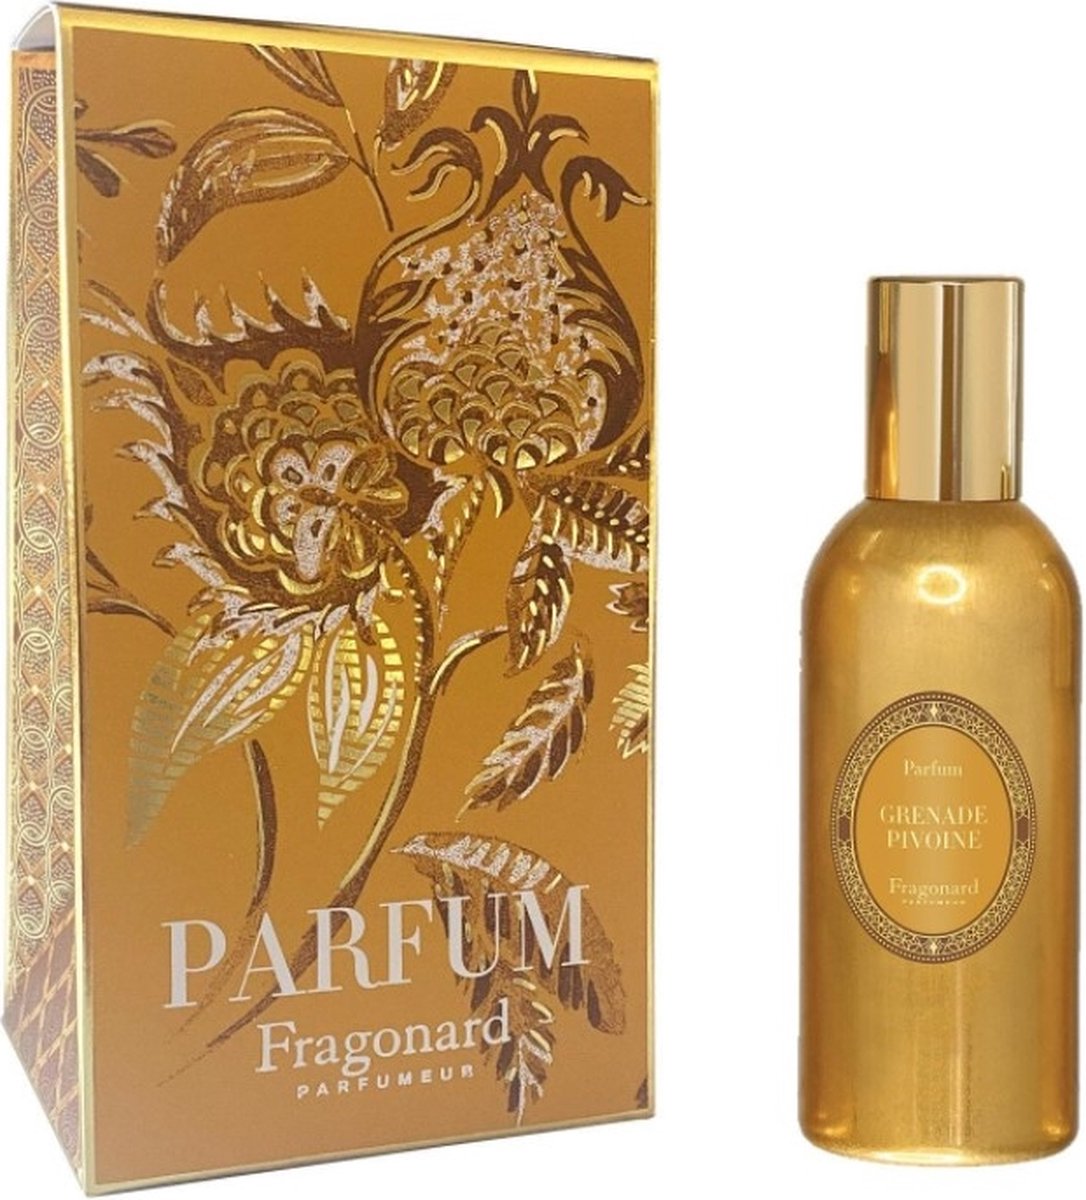 Fragonard Fragrance Parfum Grenade Pivoine The Perfume 60ml